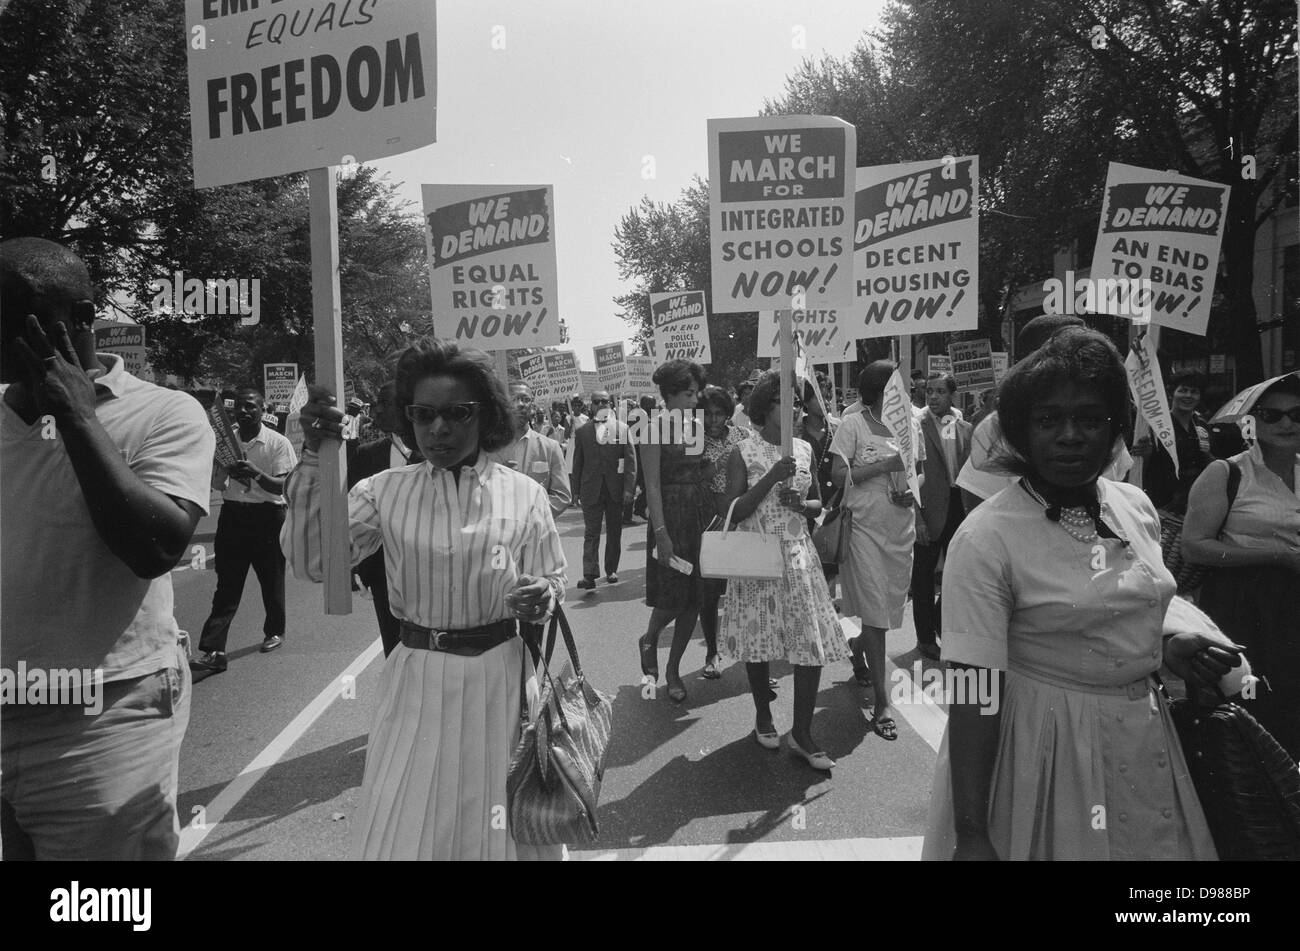 Manifestation à Washington, DC, USA. Procession d'Américains africains portant des pancartes exigeant l'égalité des droits, écoles intégrées, un logement décent, et à la fin de parti pris. 28 août 1963. Photographe : Warren K Leffler. Banque D'Images